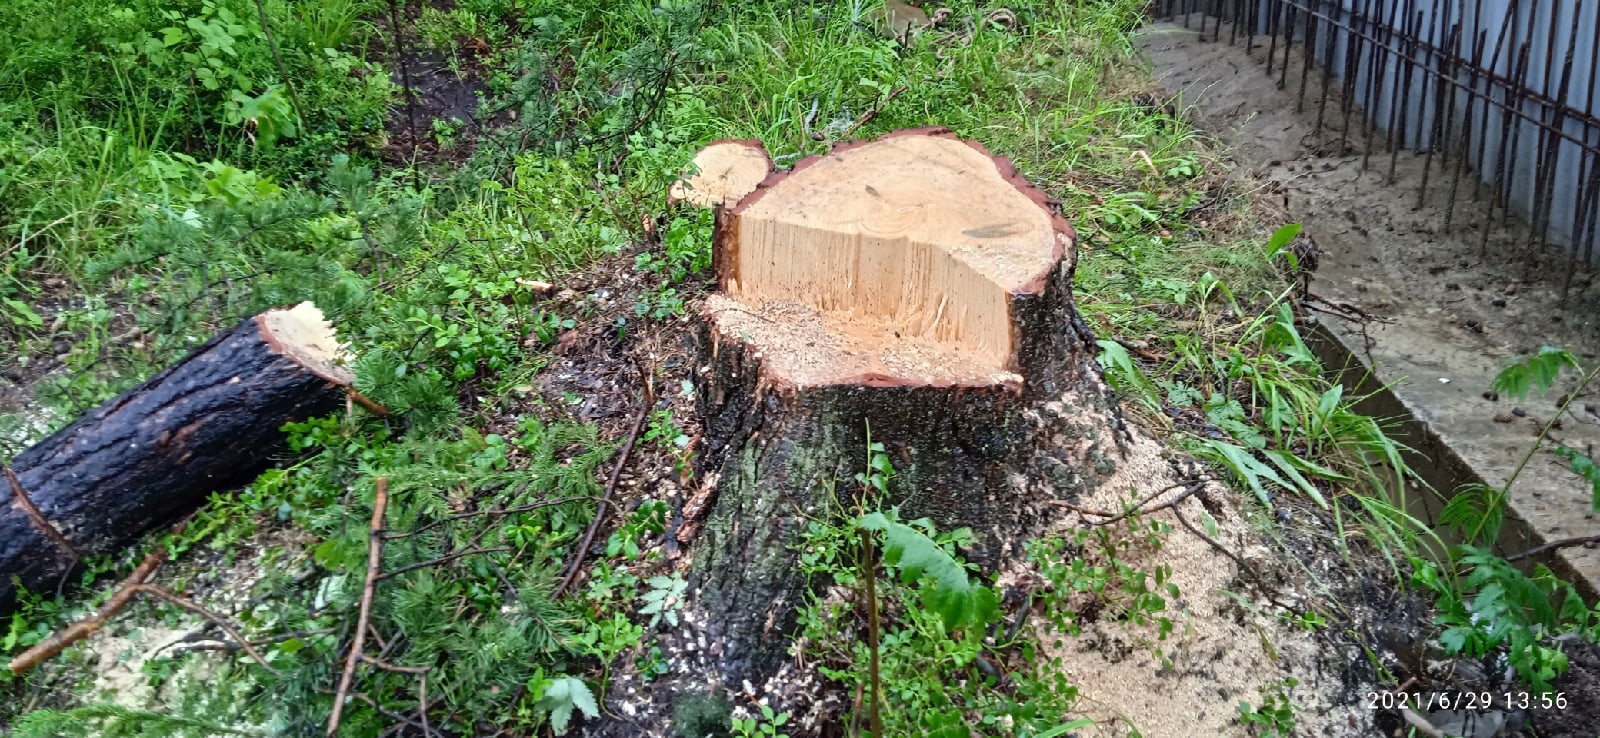 Петрозаводчане заметили новые вырубки деревьев в Каменном боре